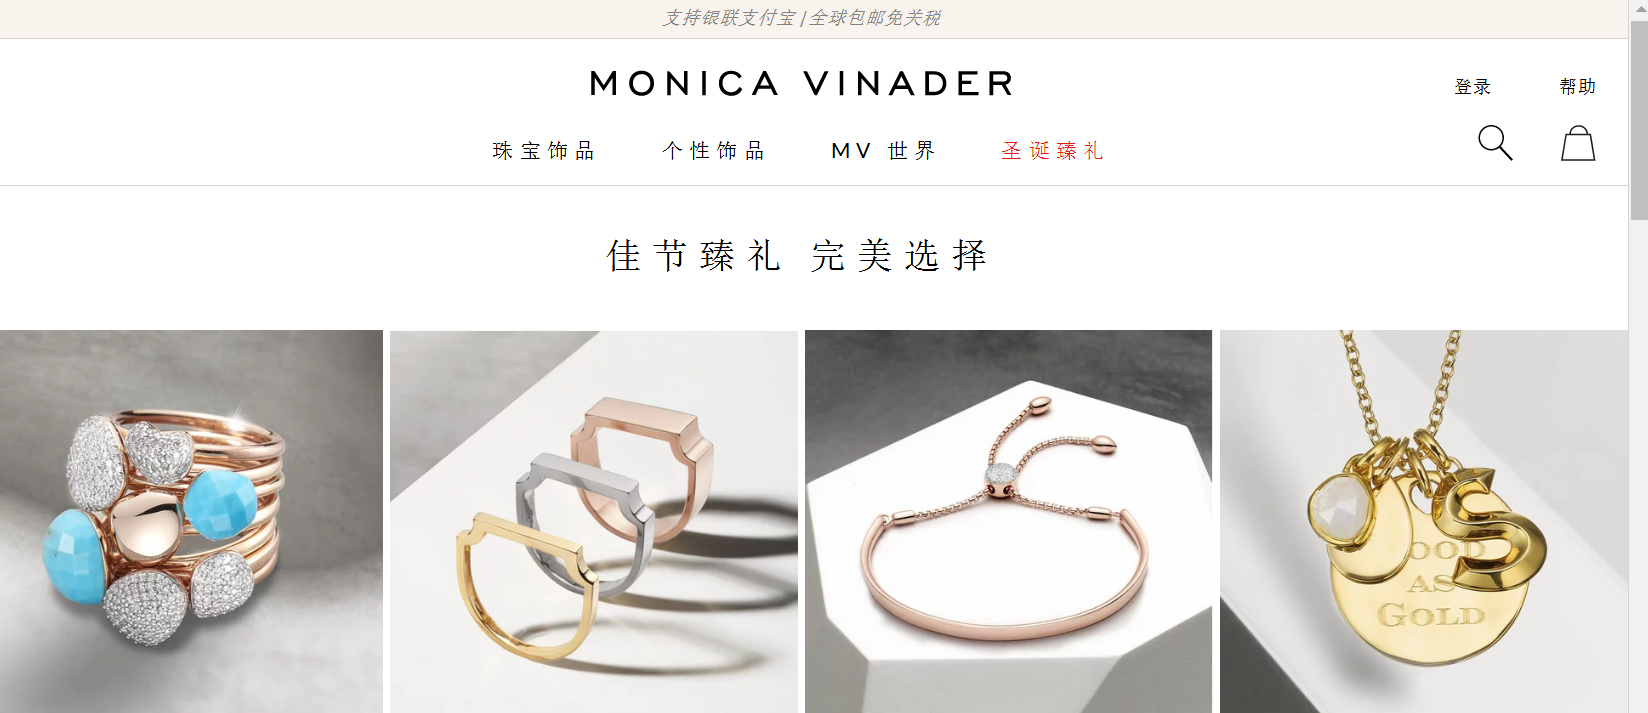 monica vinader官网-monicavinader中国官网-monicavinader中文官网-海淘英国轻奢珠宝品牌-图片3